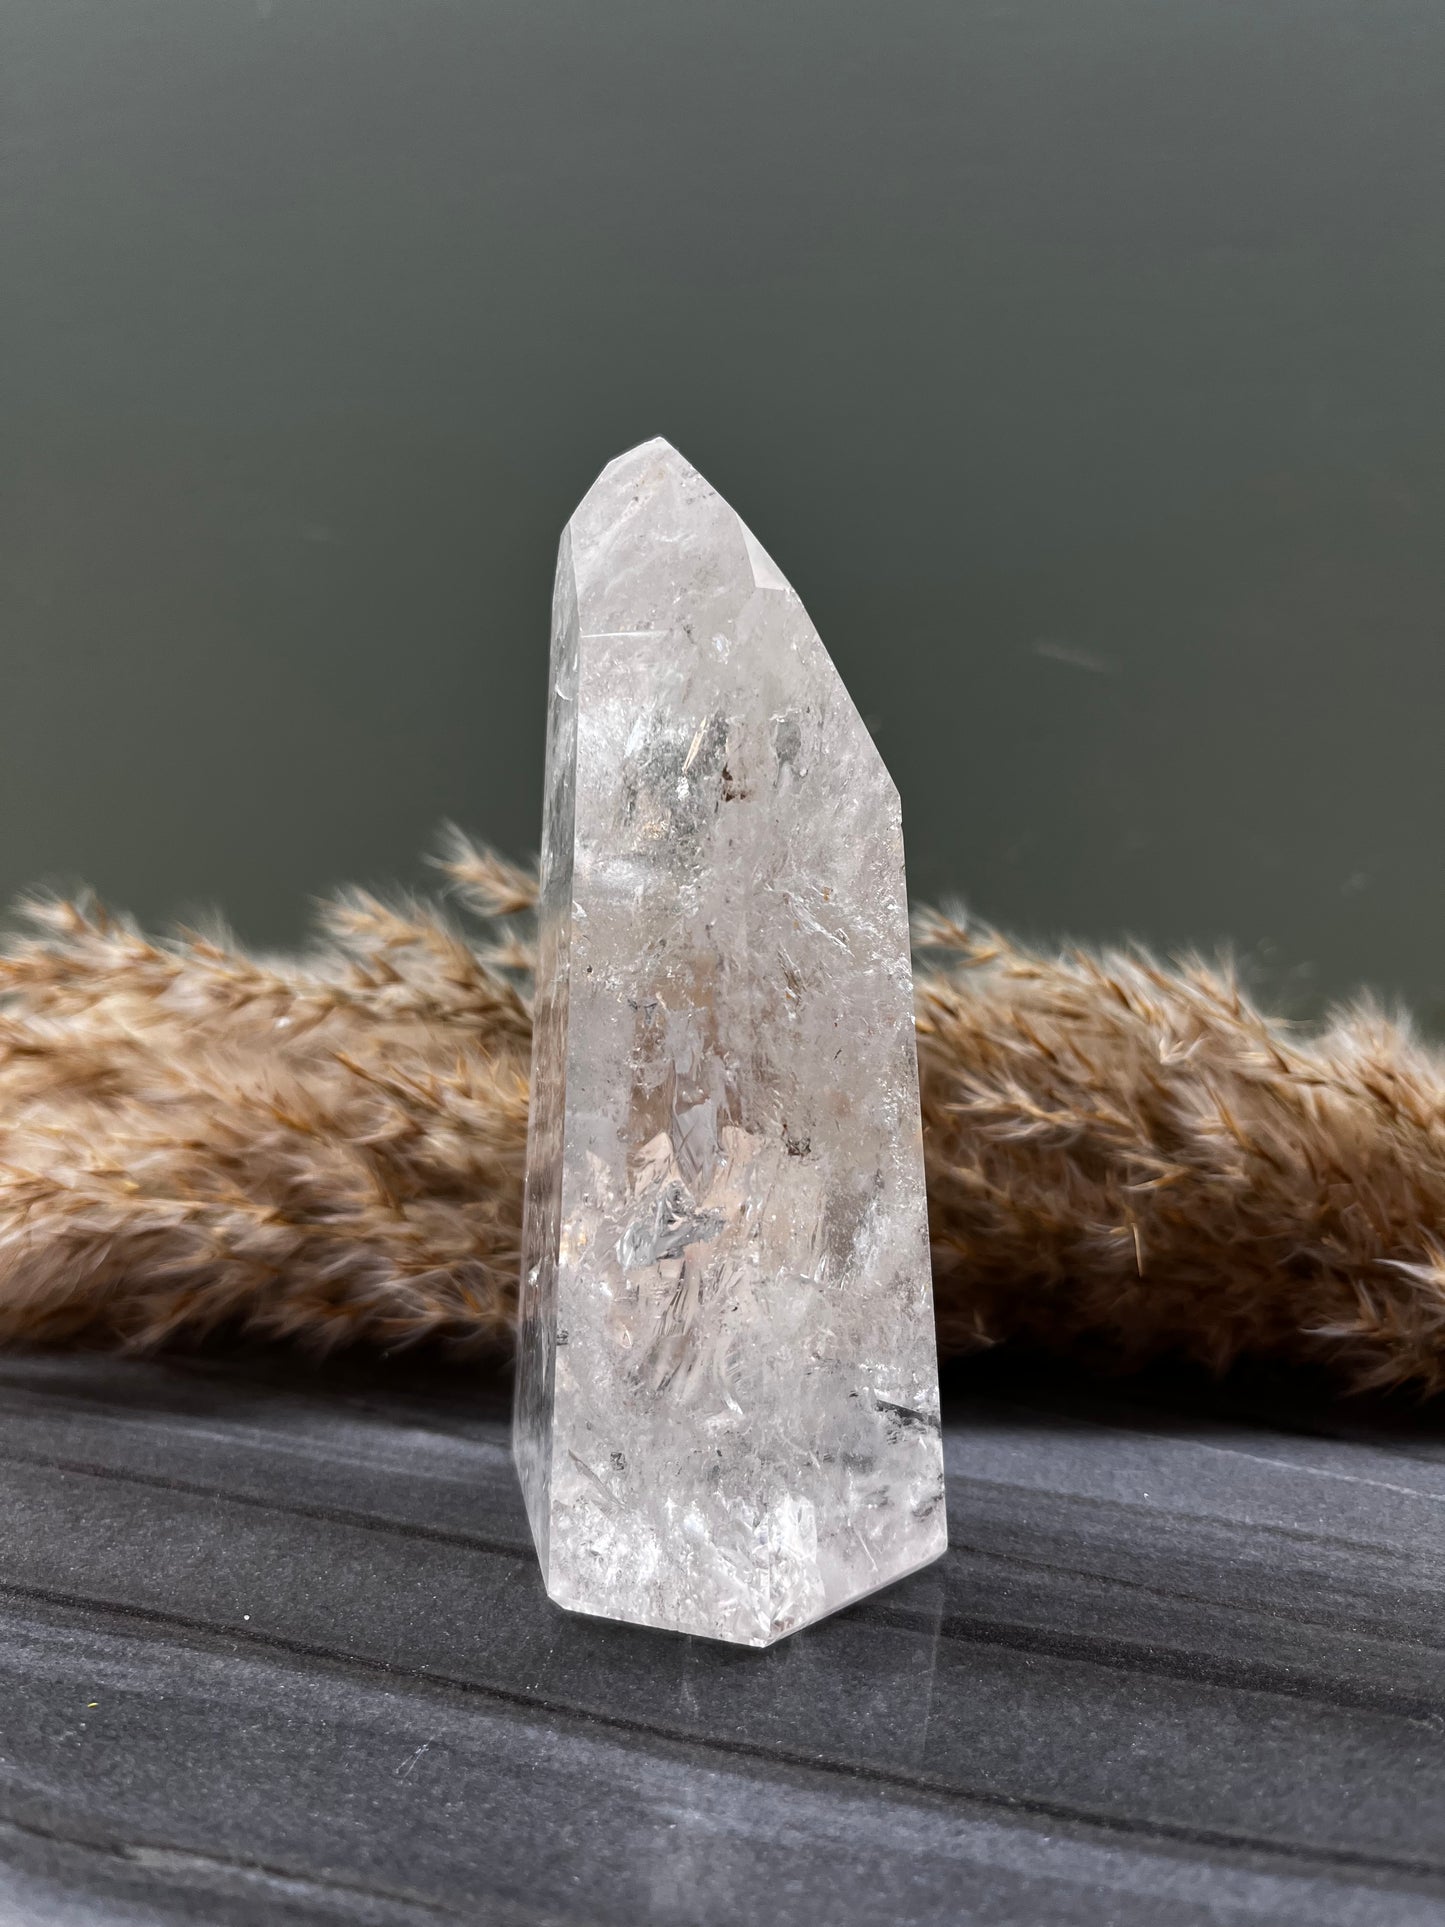 Bergkristal, obelisk